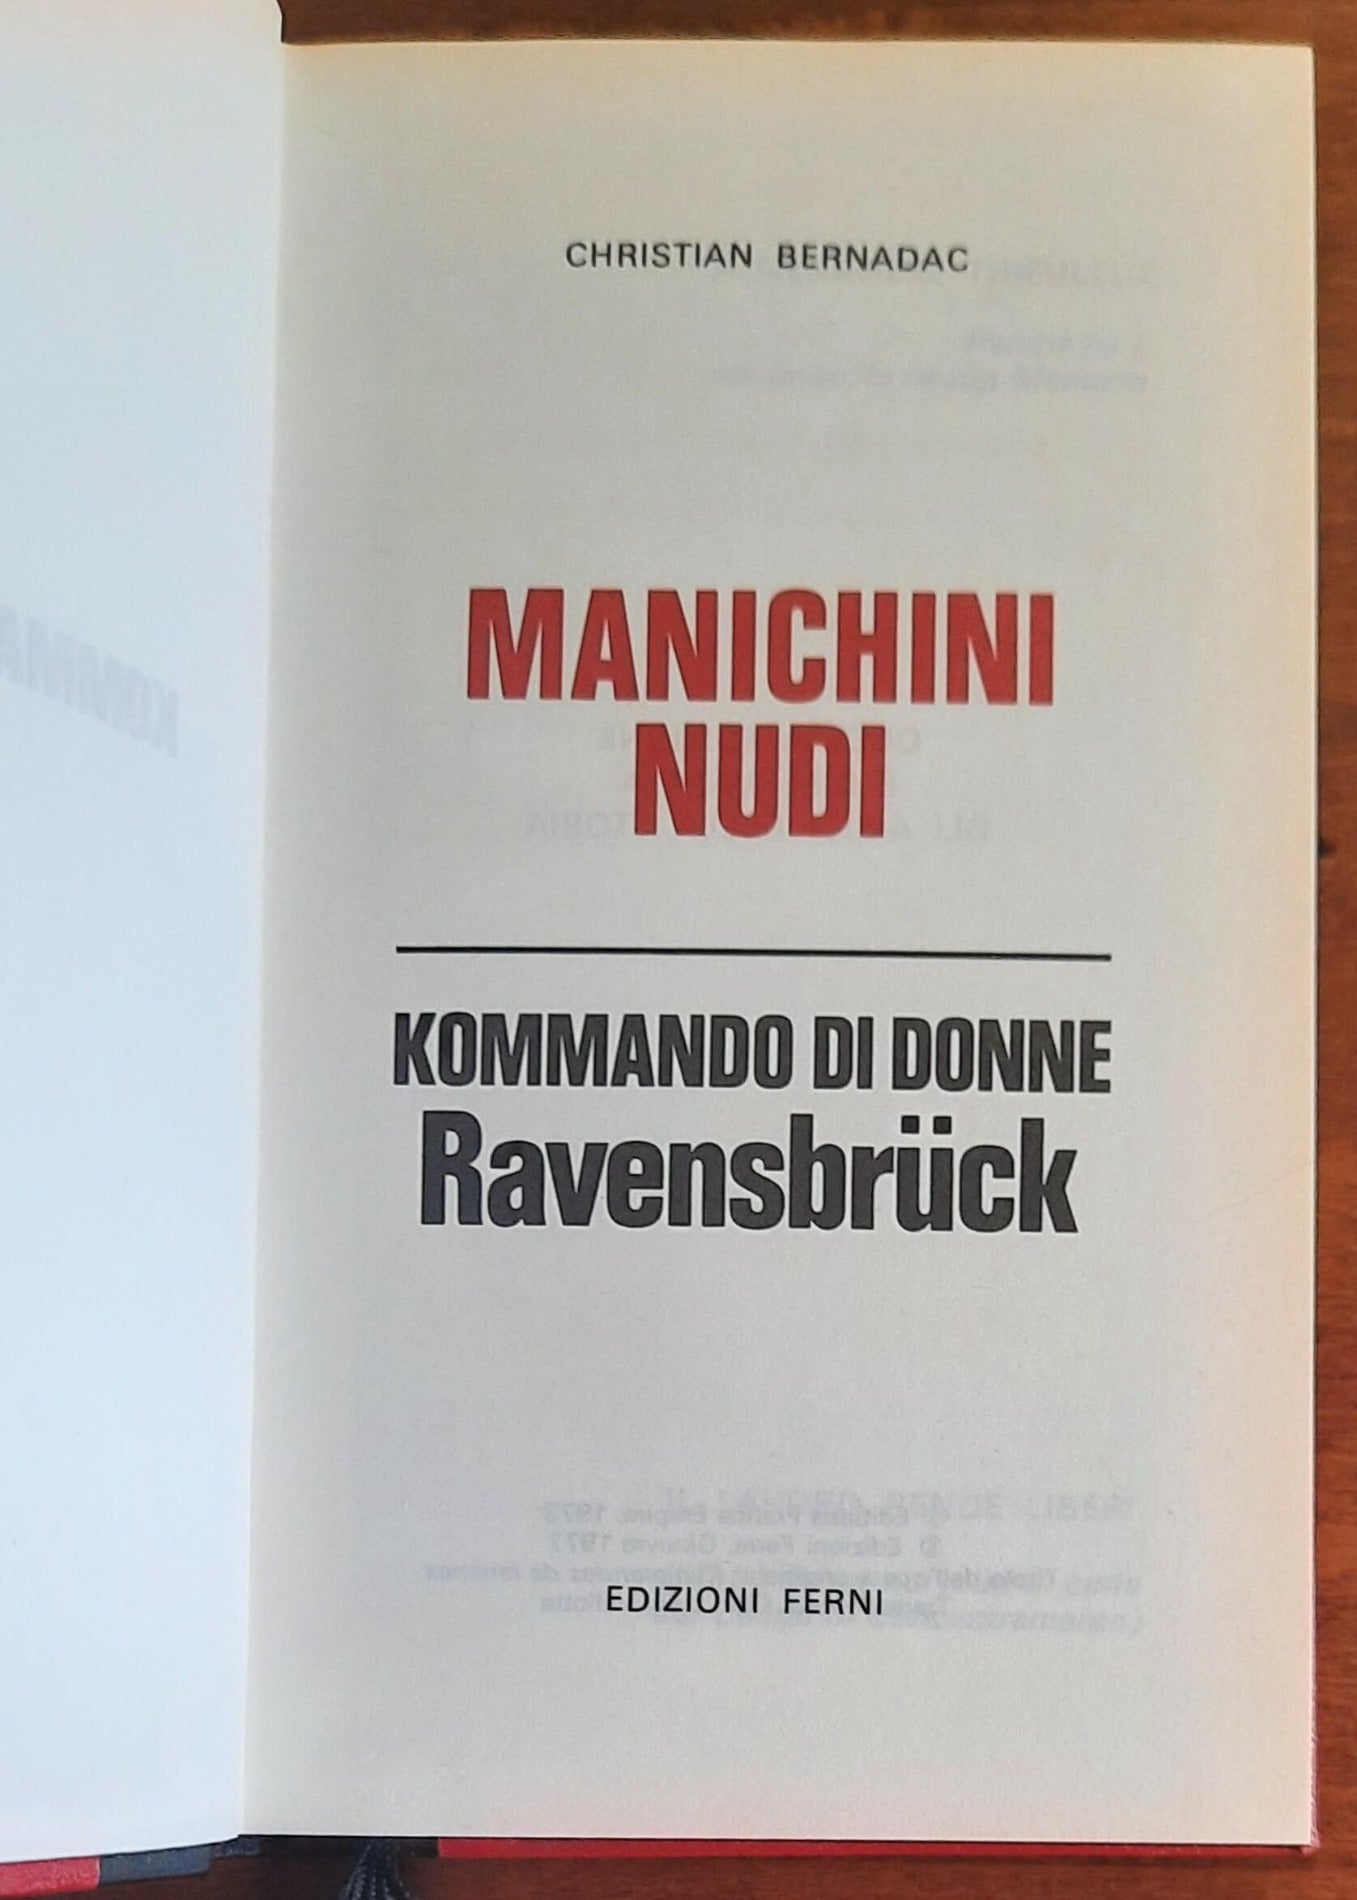 Manichini nudi. Kommando di donne. Ravensbruck - Edizioni Ferni